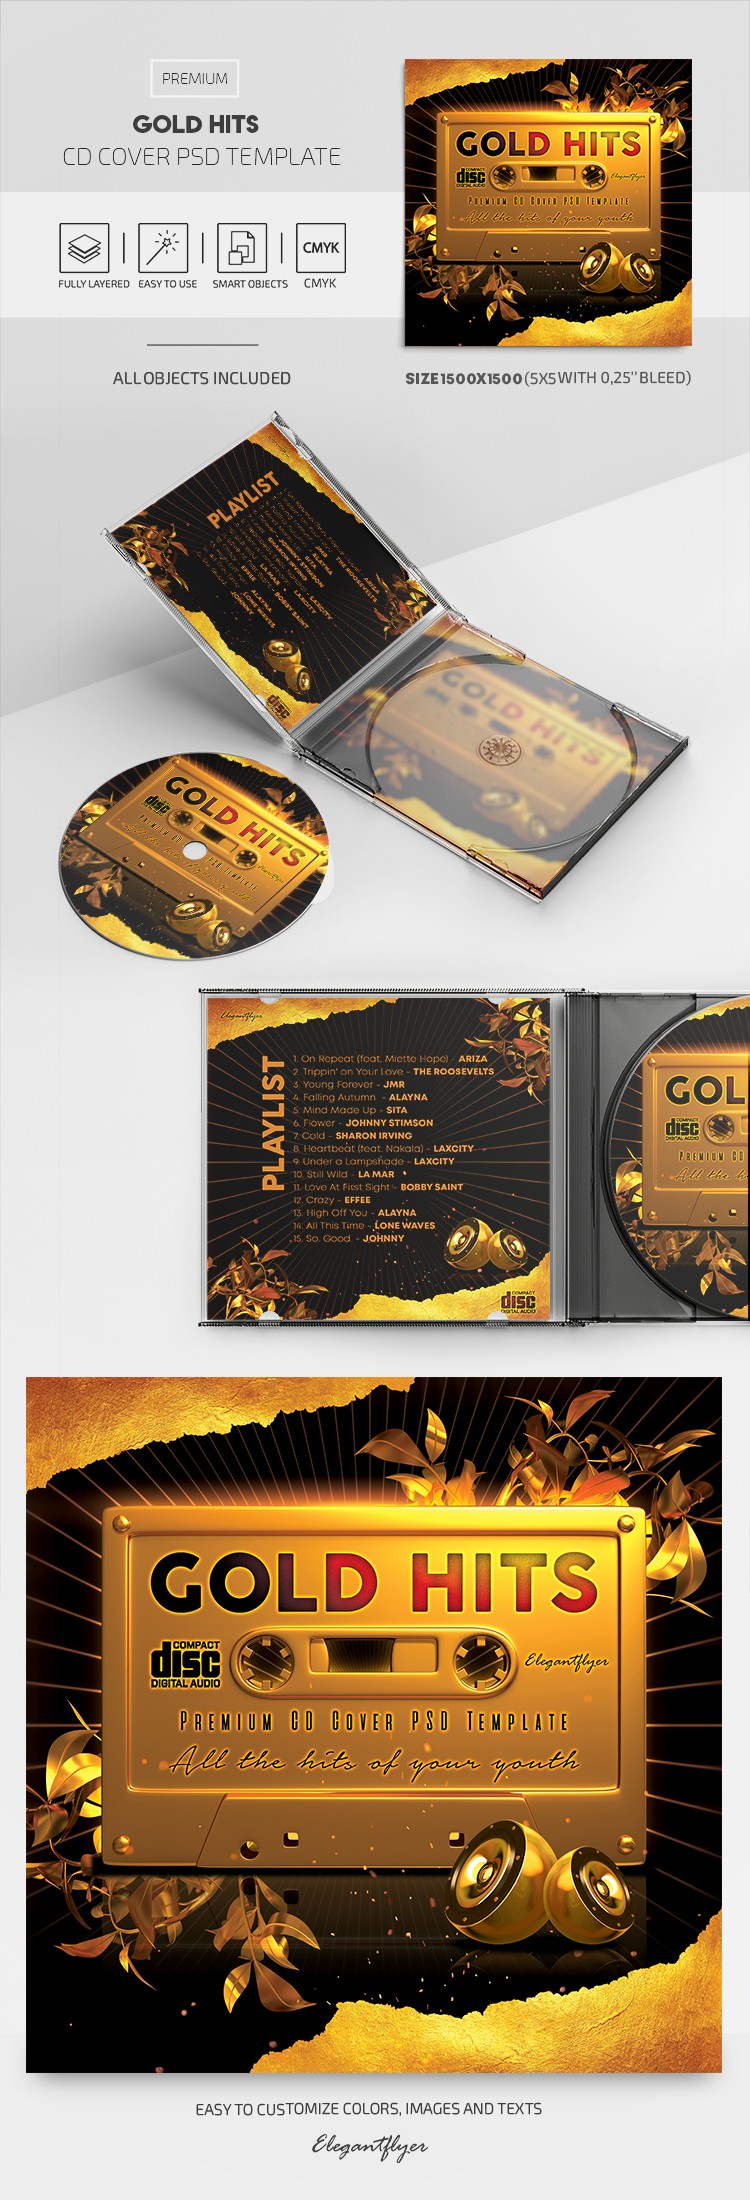 Portada del CD Gold Hits by ElegantFlyer